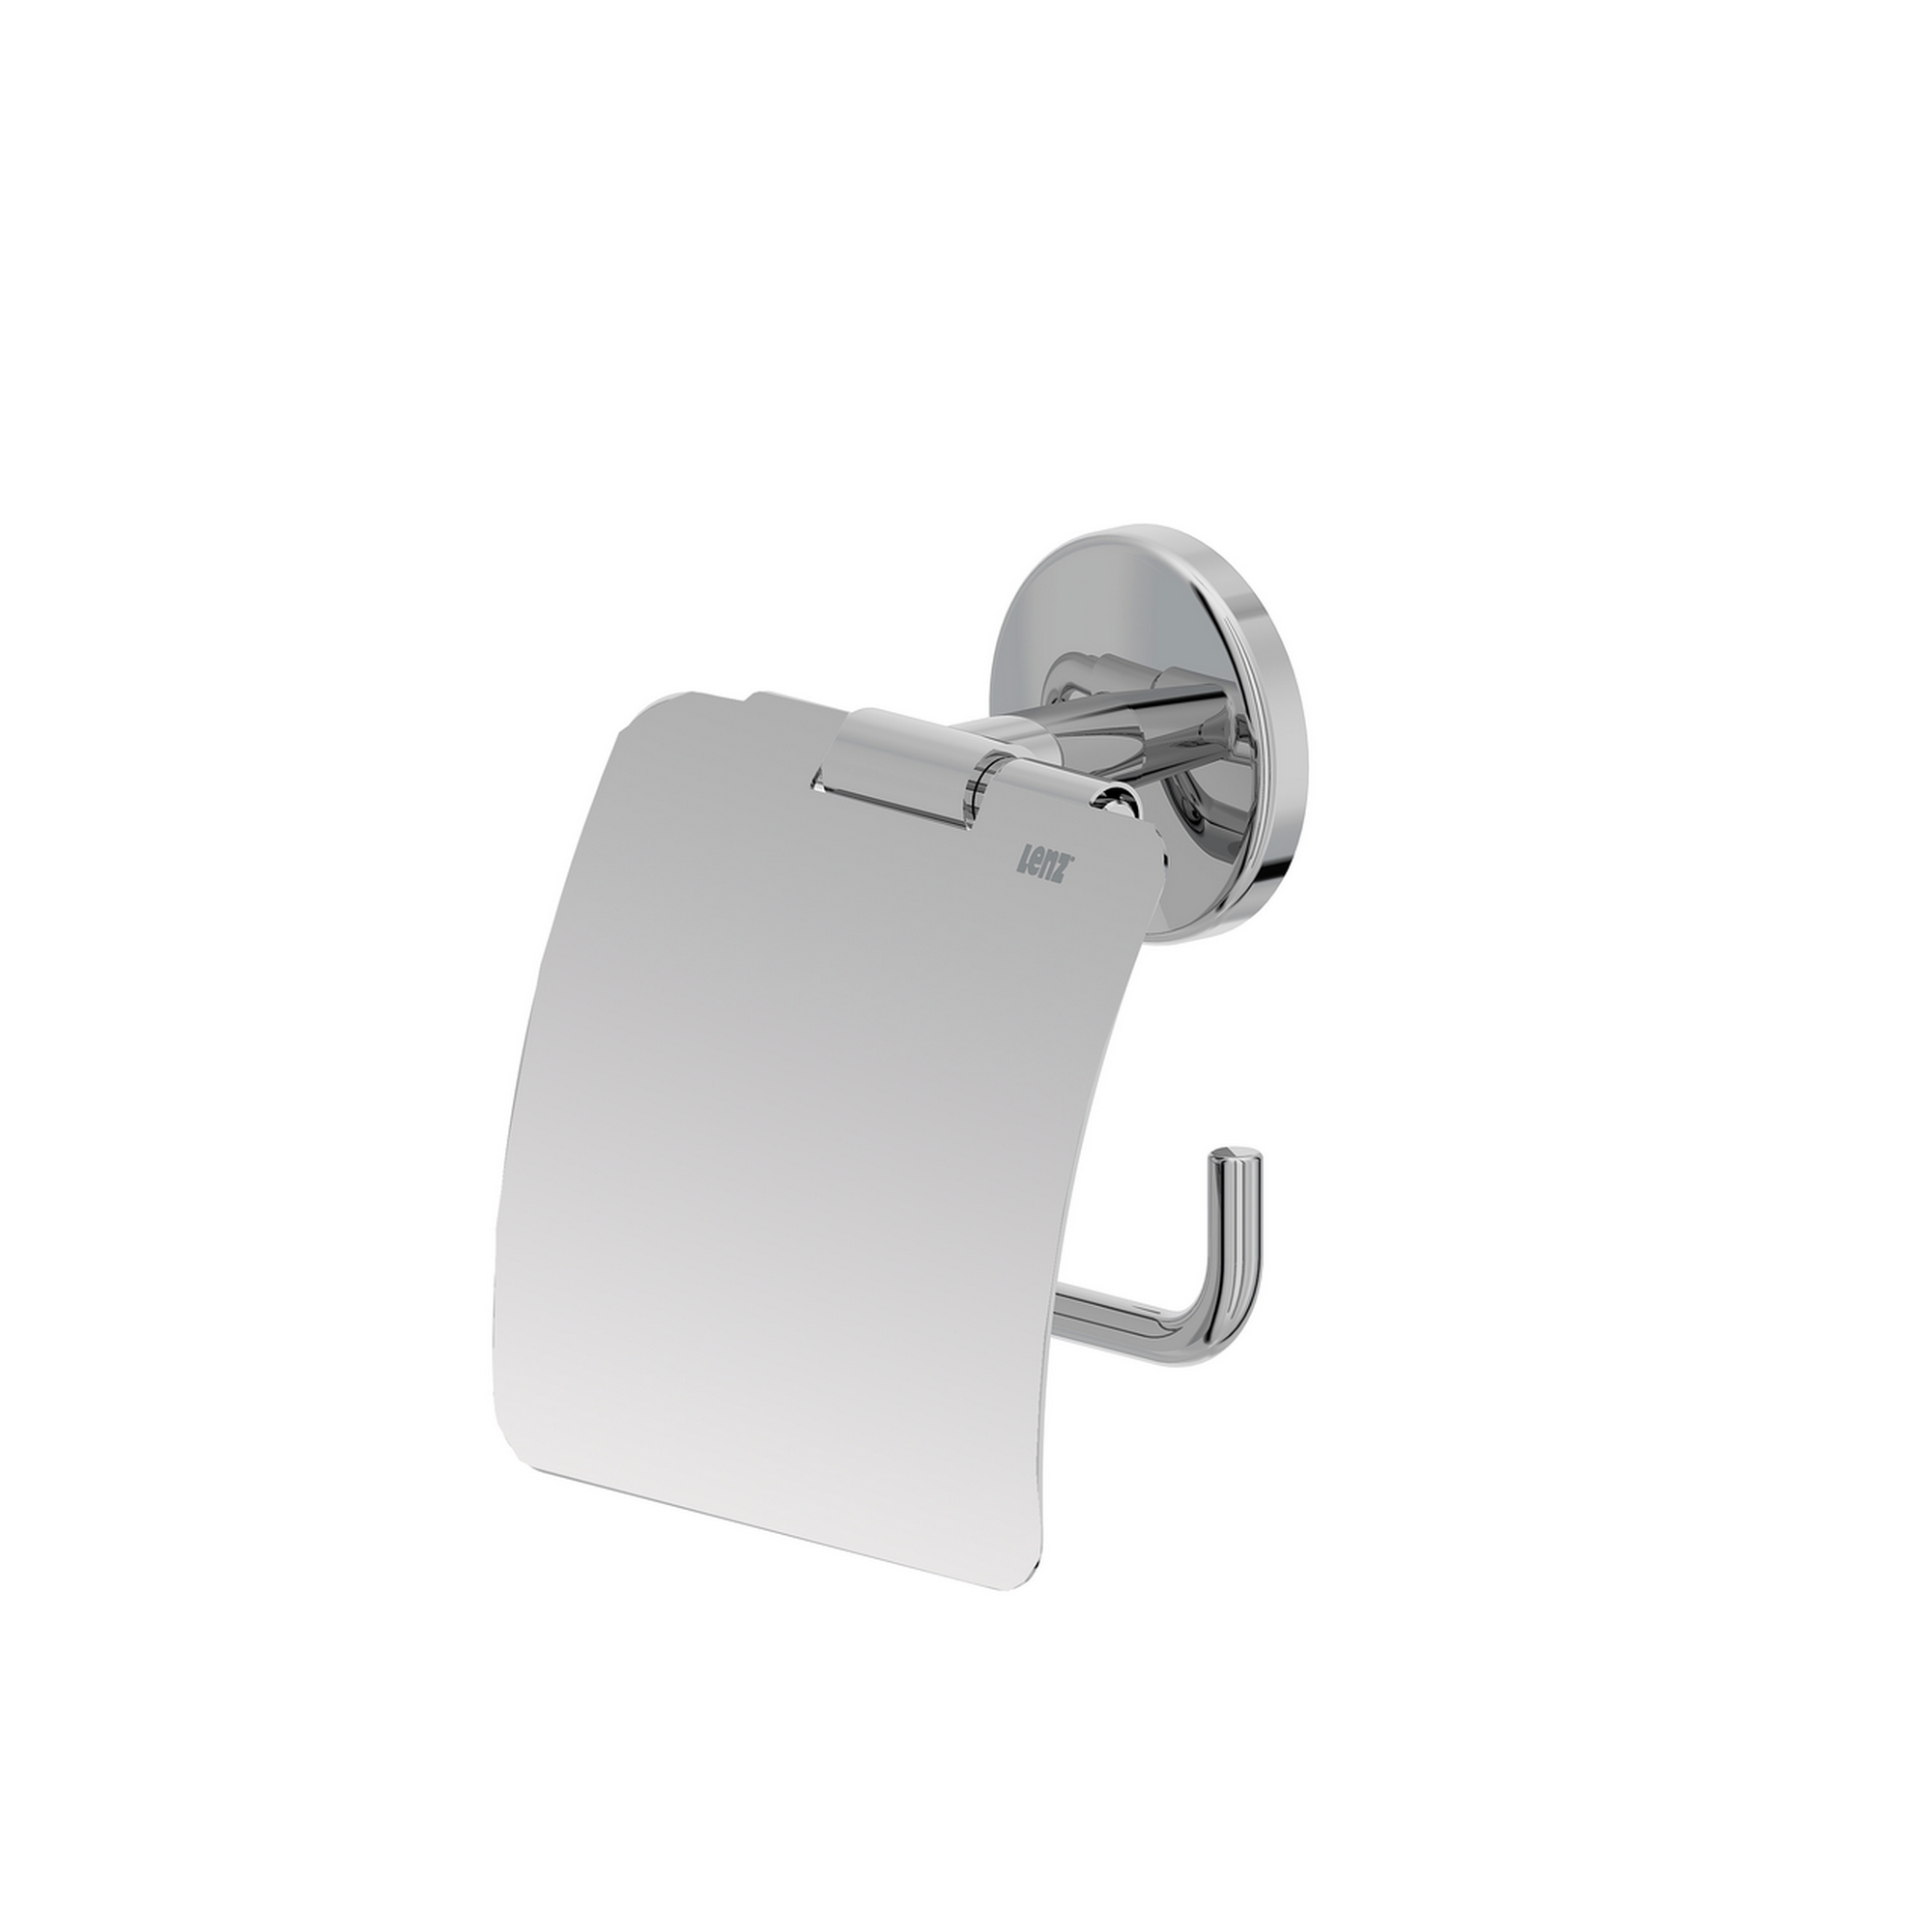 Toilettenpapierhalter mit Deckel 'Flame' wandhängend verchromt + product picture